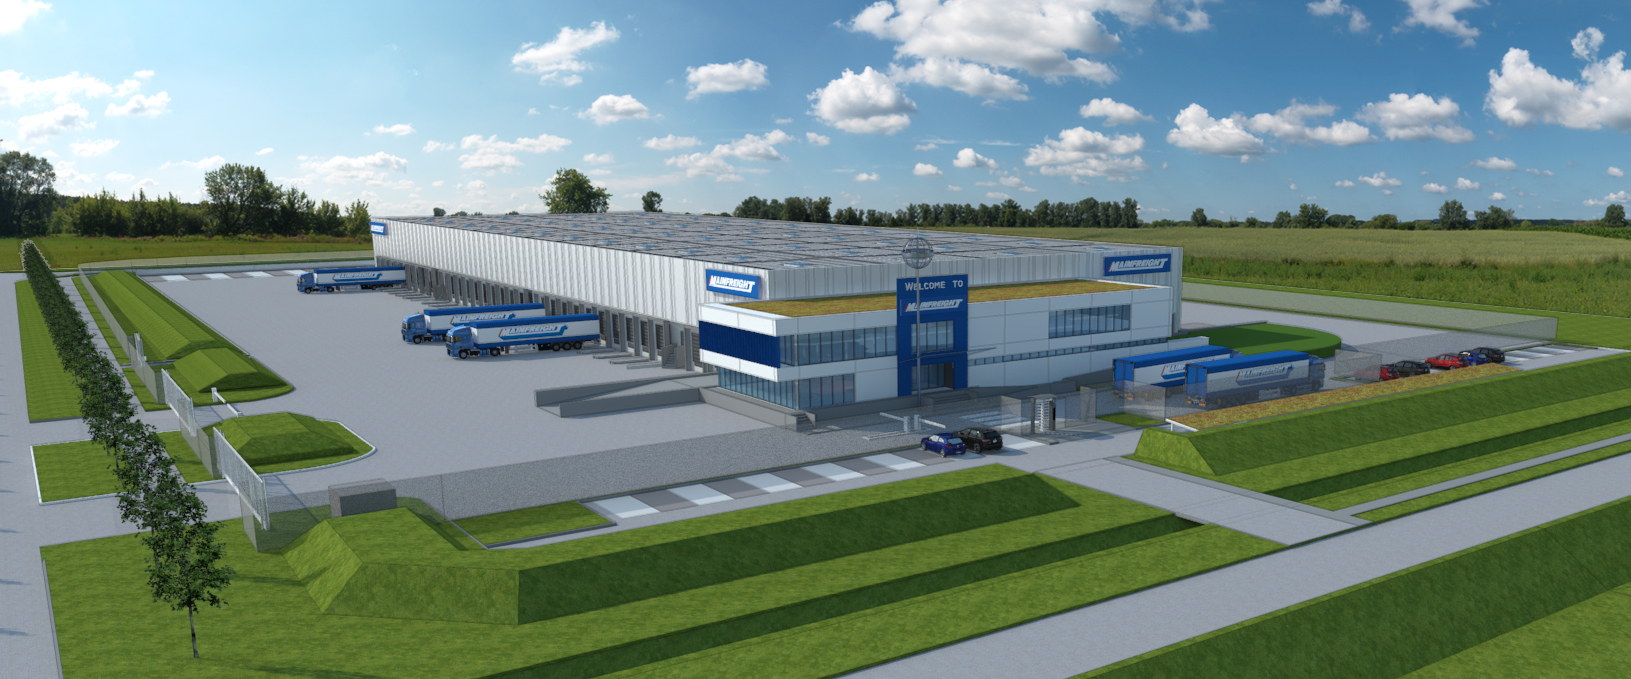 Mainfreight inaugura il parco industriale Eiland a Zwijnaarde con il primo impianto logistico